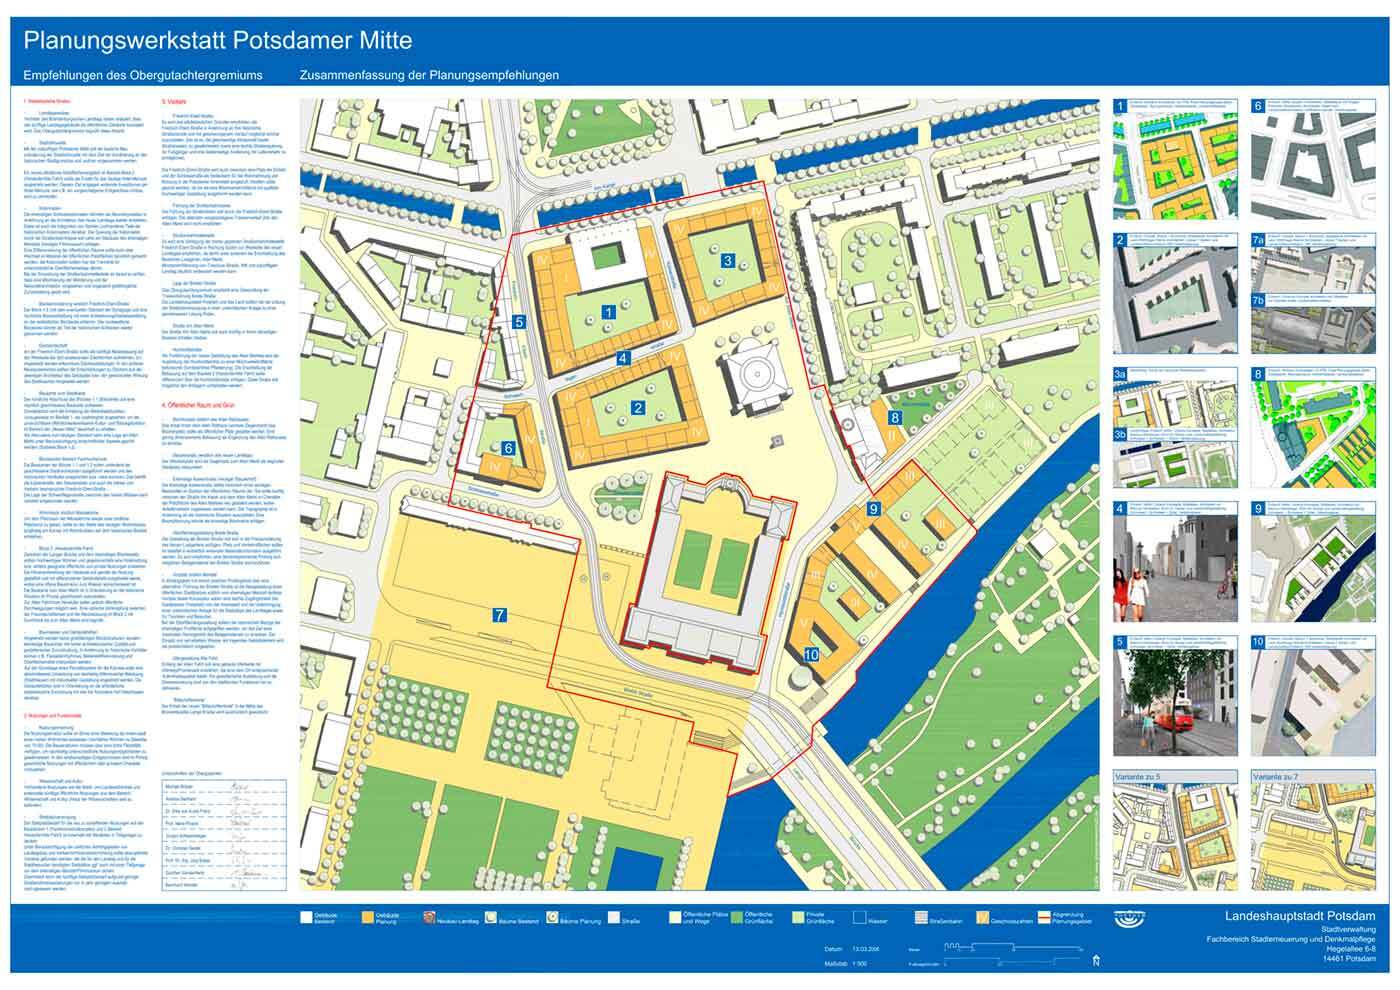 Karte: Mittig ist die Darstellung der städtebaulichen Entwicklung in einem größeren Ausschnitt zu sehen. Links davon stehen Beschreibungen zu der Darstellung und rechts davon die Einzel-Maßnahmen mit kleinem Bild.